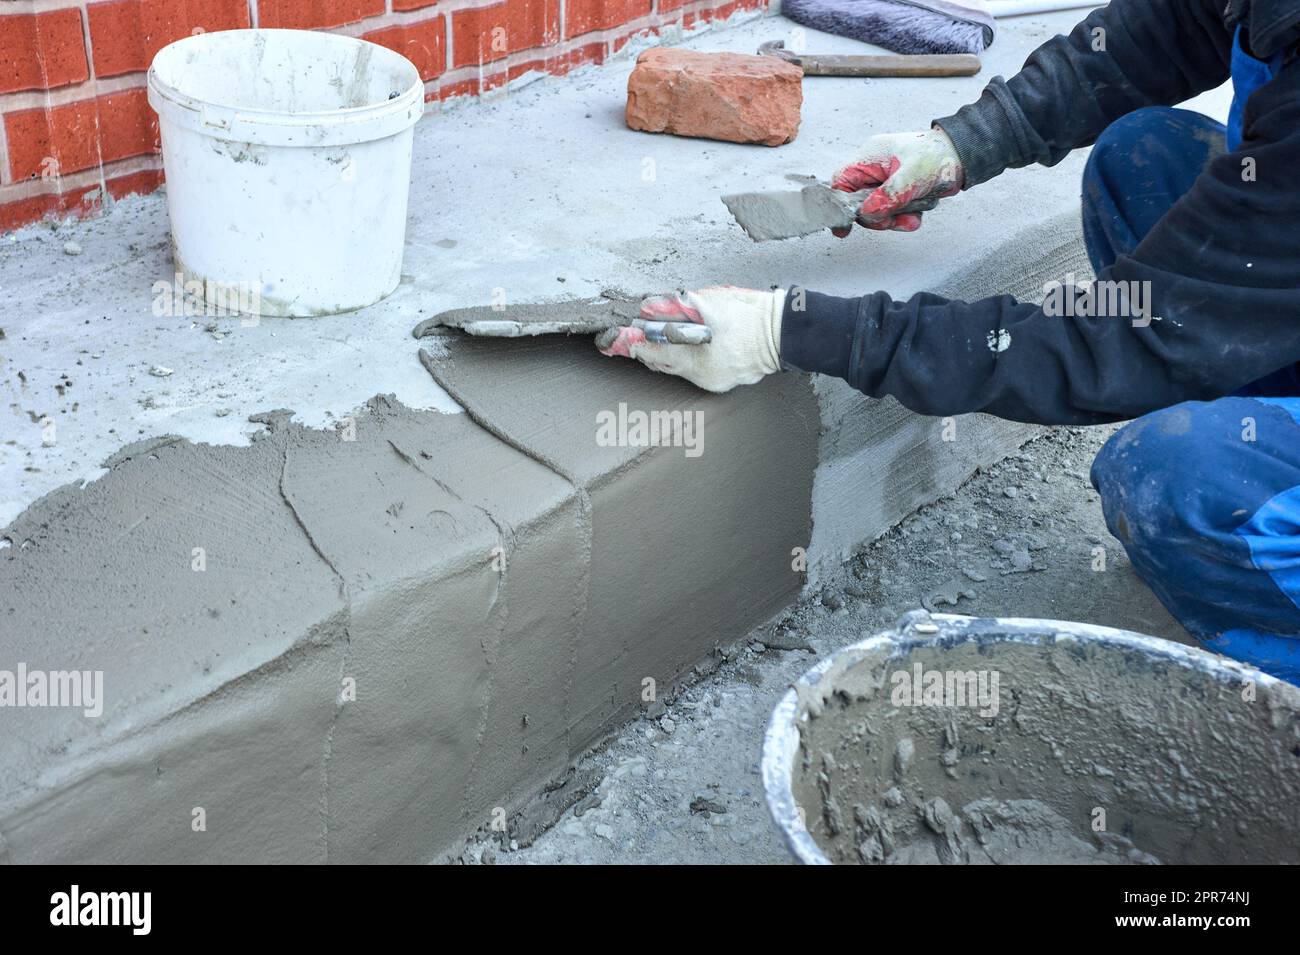 Ein Arbeiter verwendet einen Spachtel, um das Zementgemisch entlang der Rampe zu verteilen Stockfoto